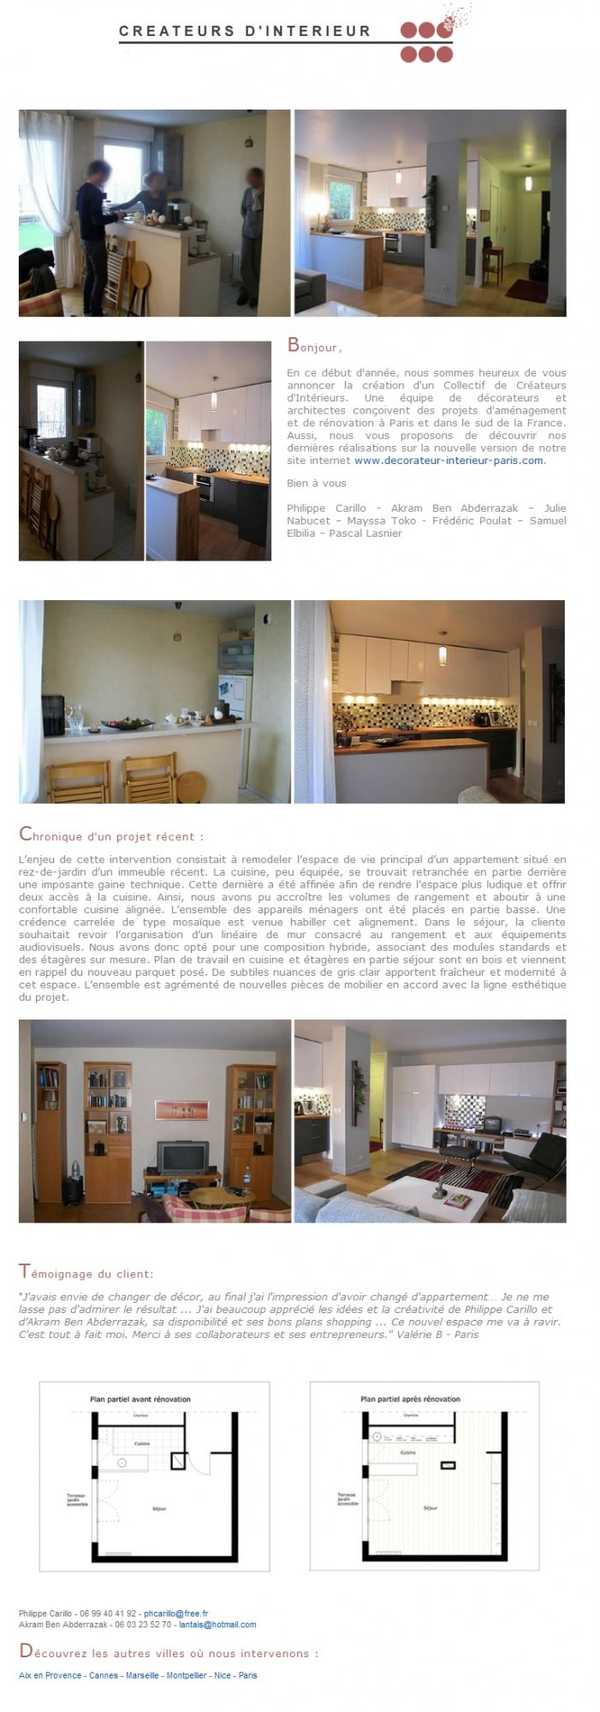 Newsletter de mars 2011 sur la rénovation d'un appartement en rez-de-jardin dans une immeuble récent.